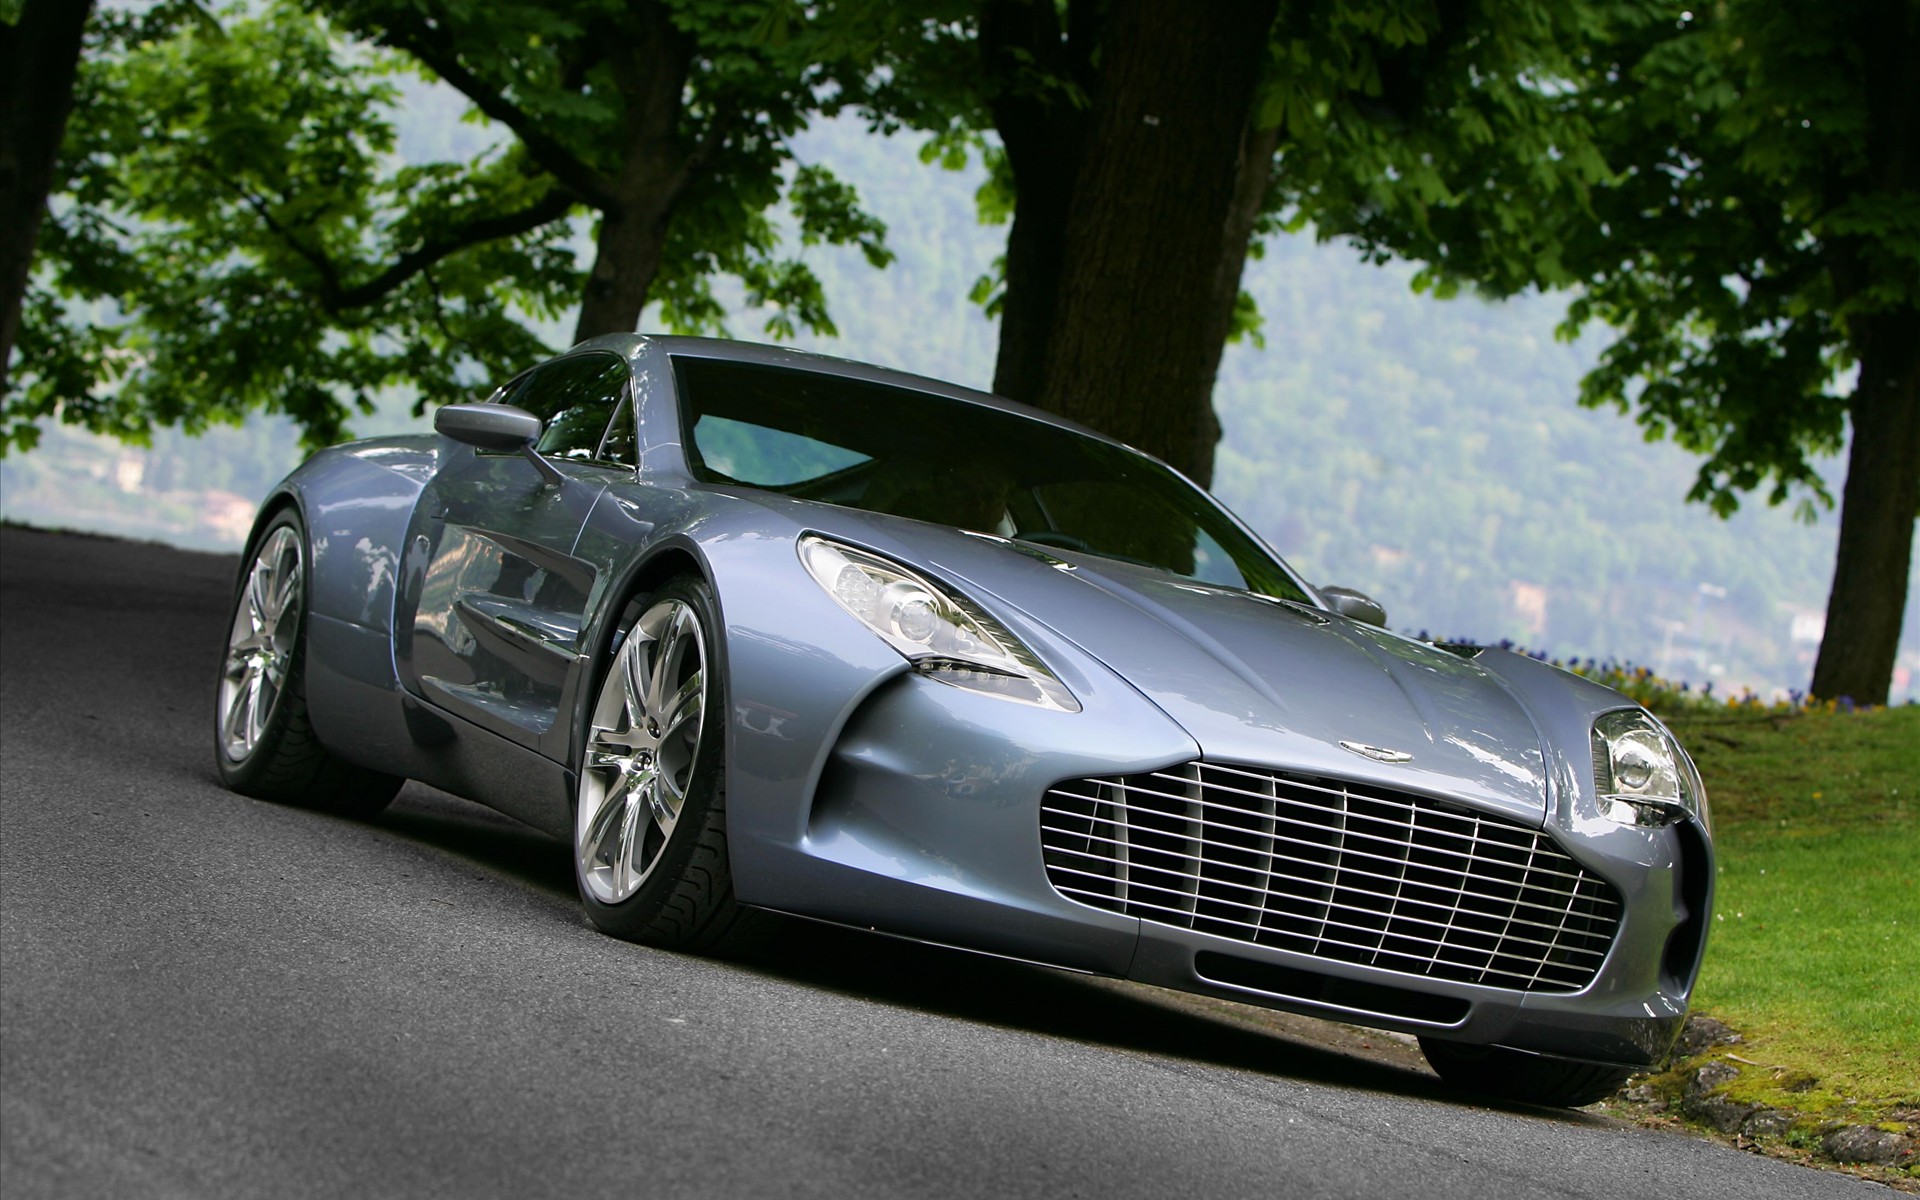 Aston Martin One